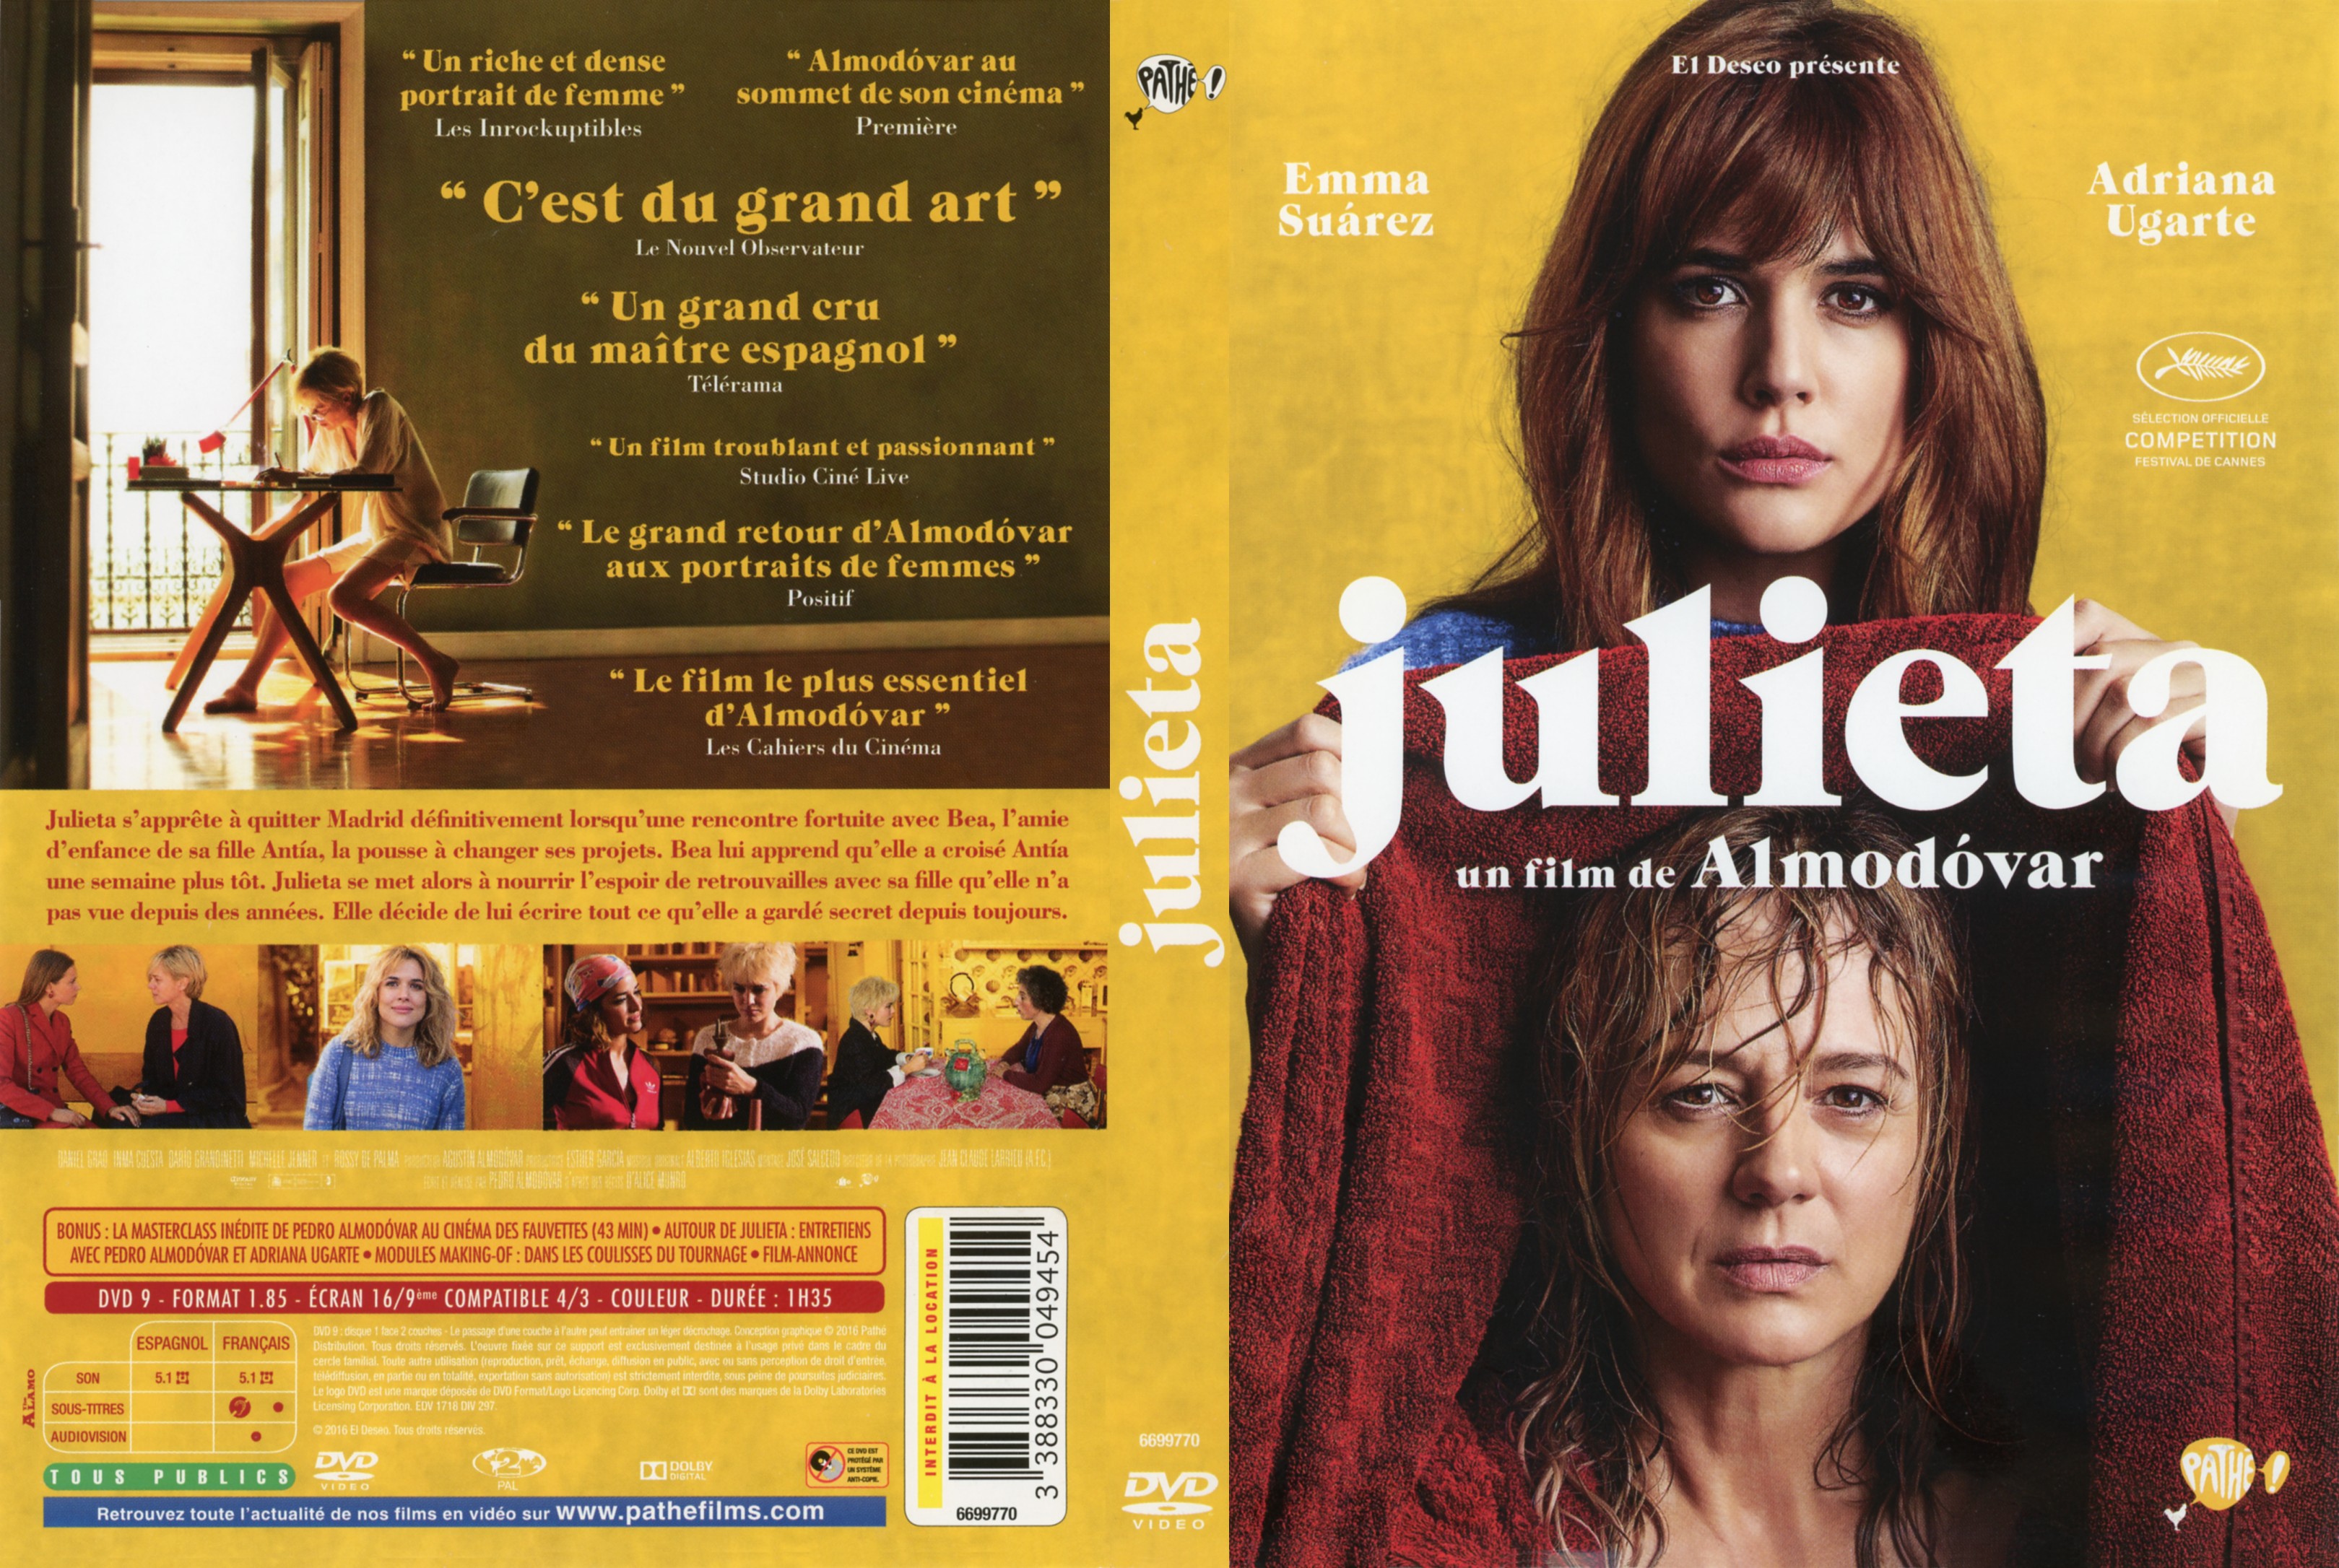 Jaquette DVD Julieta